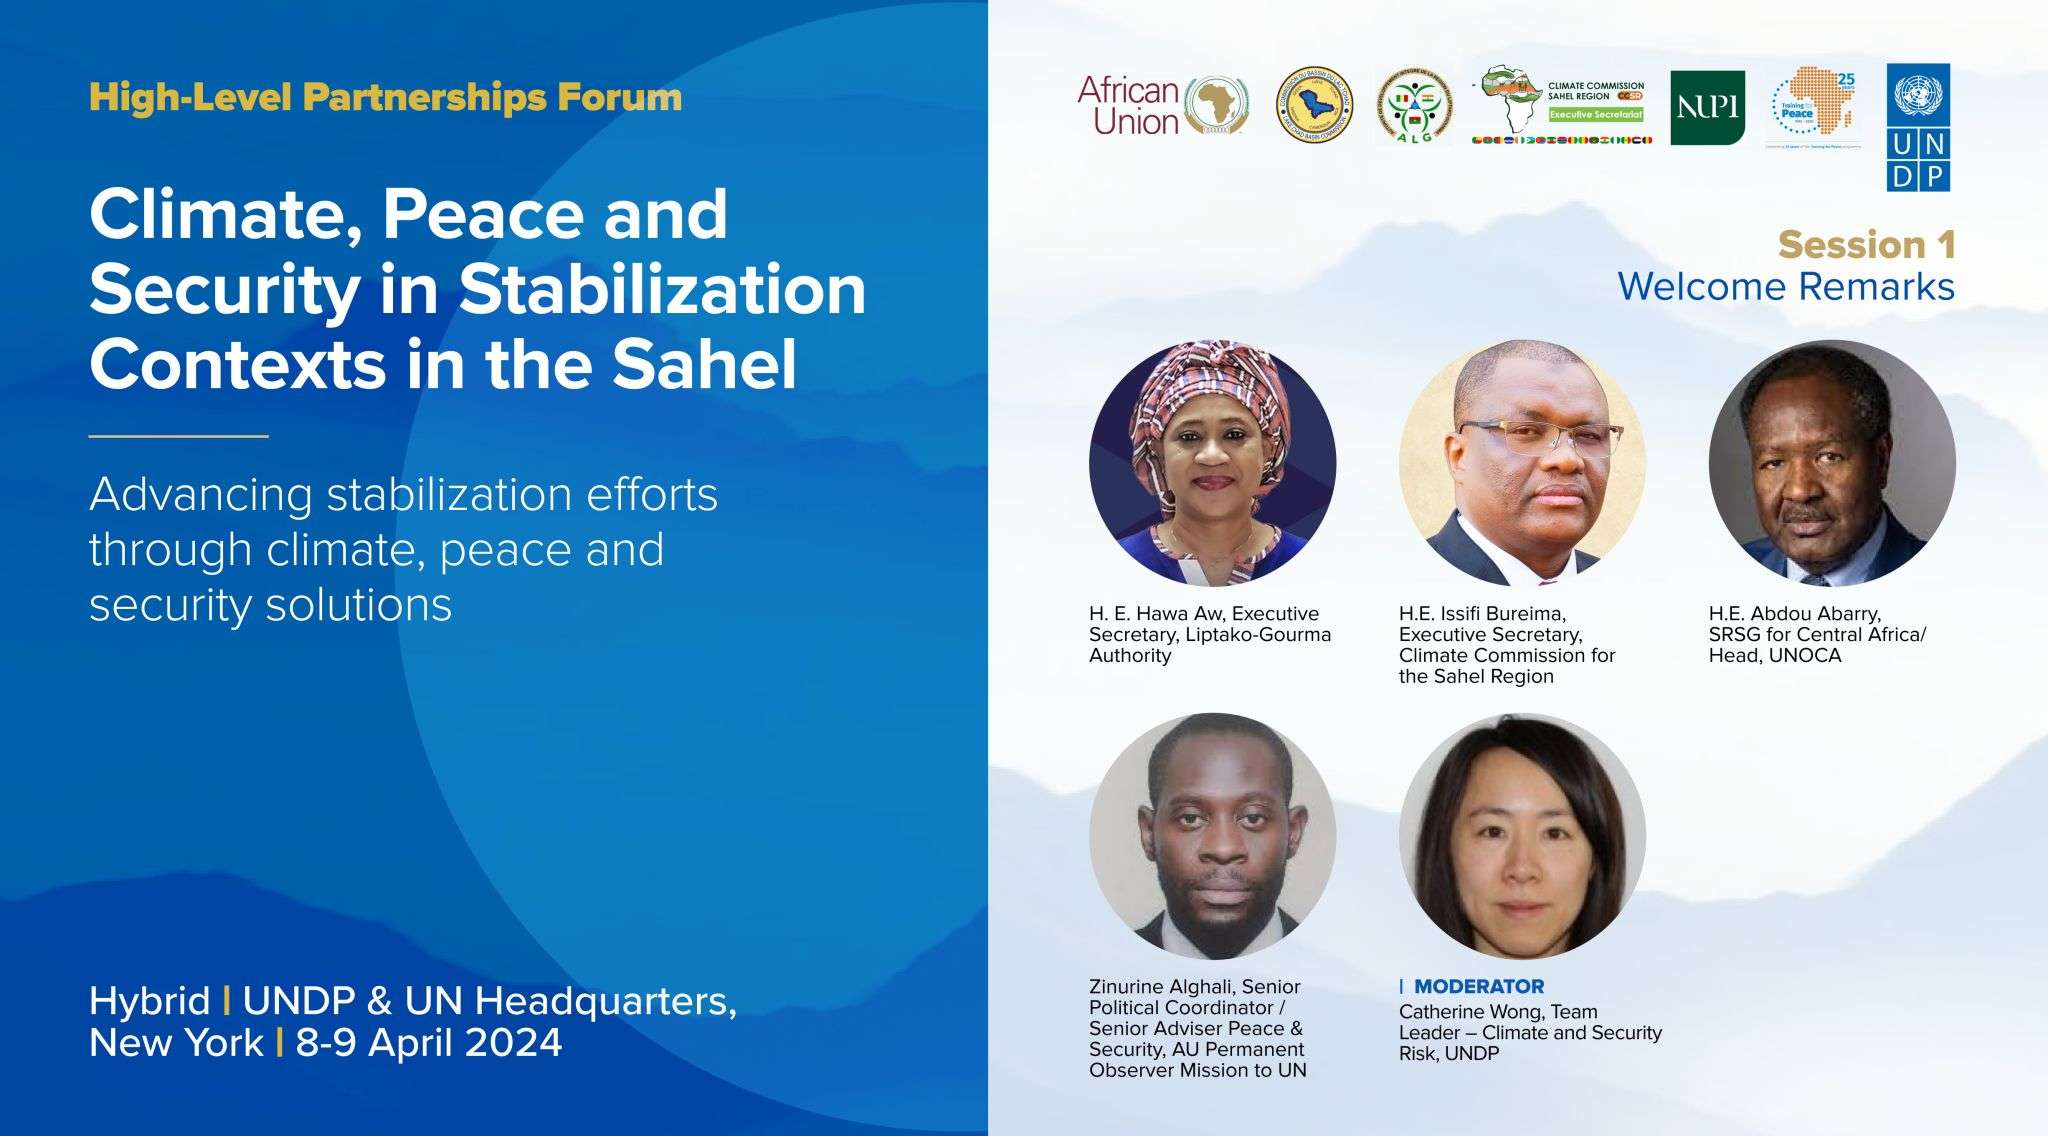 Le Forum de partenariats de haut niveau sur le climat, la paix et la sécurité dans les contextes de stabilisation au Sahel s’ouvre ce jour à New York